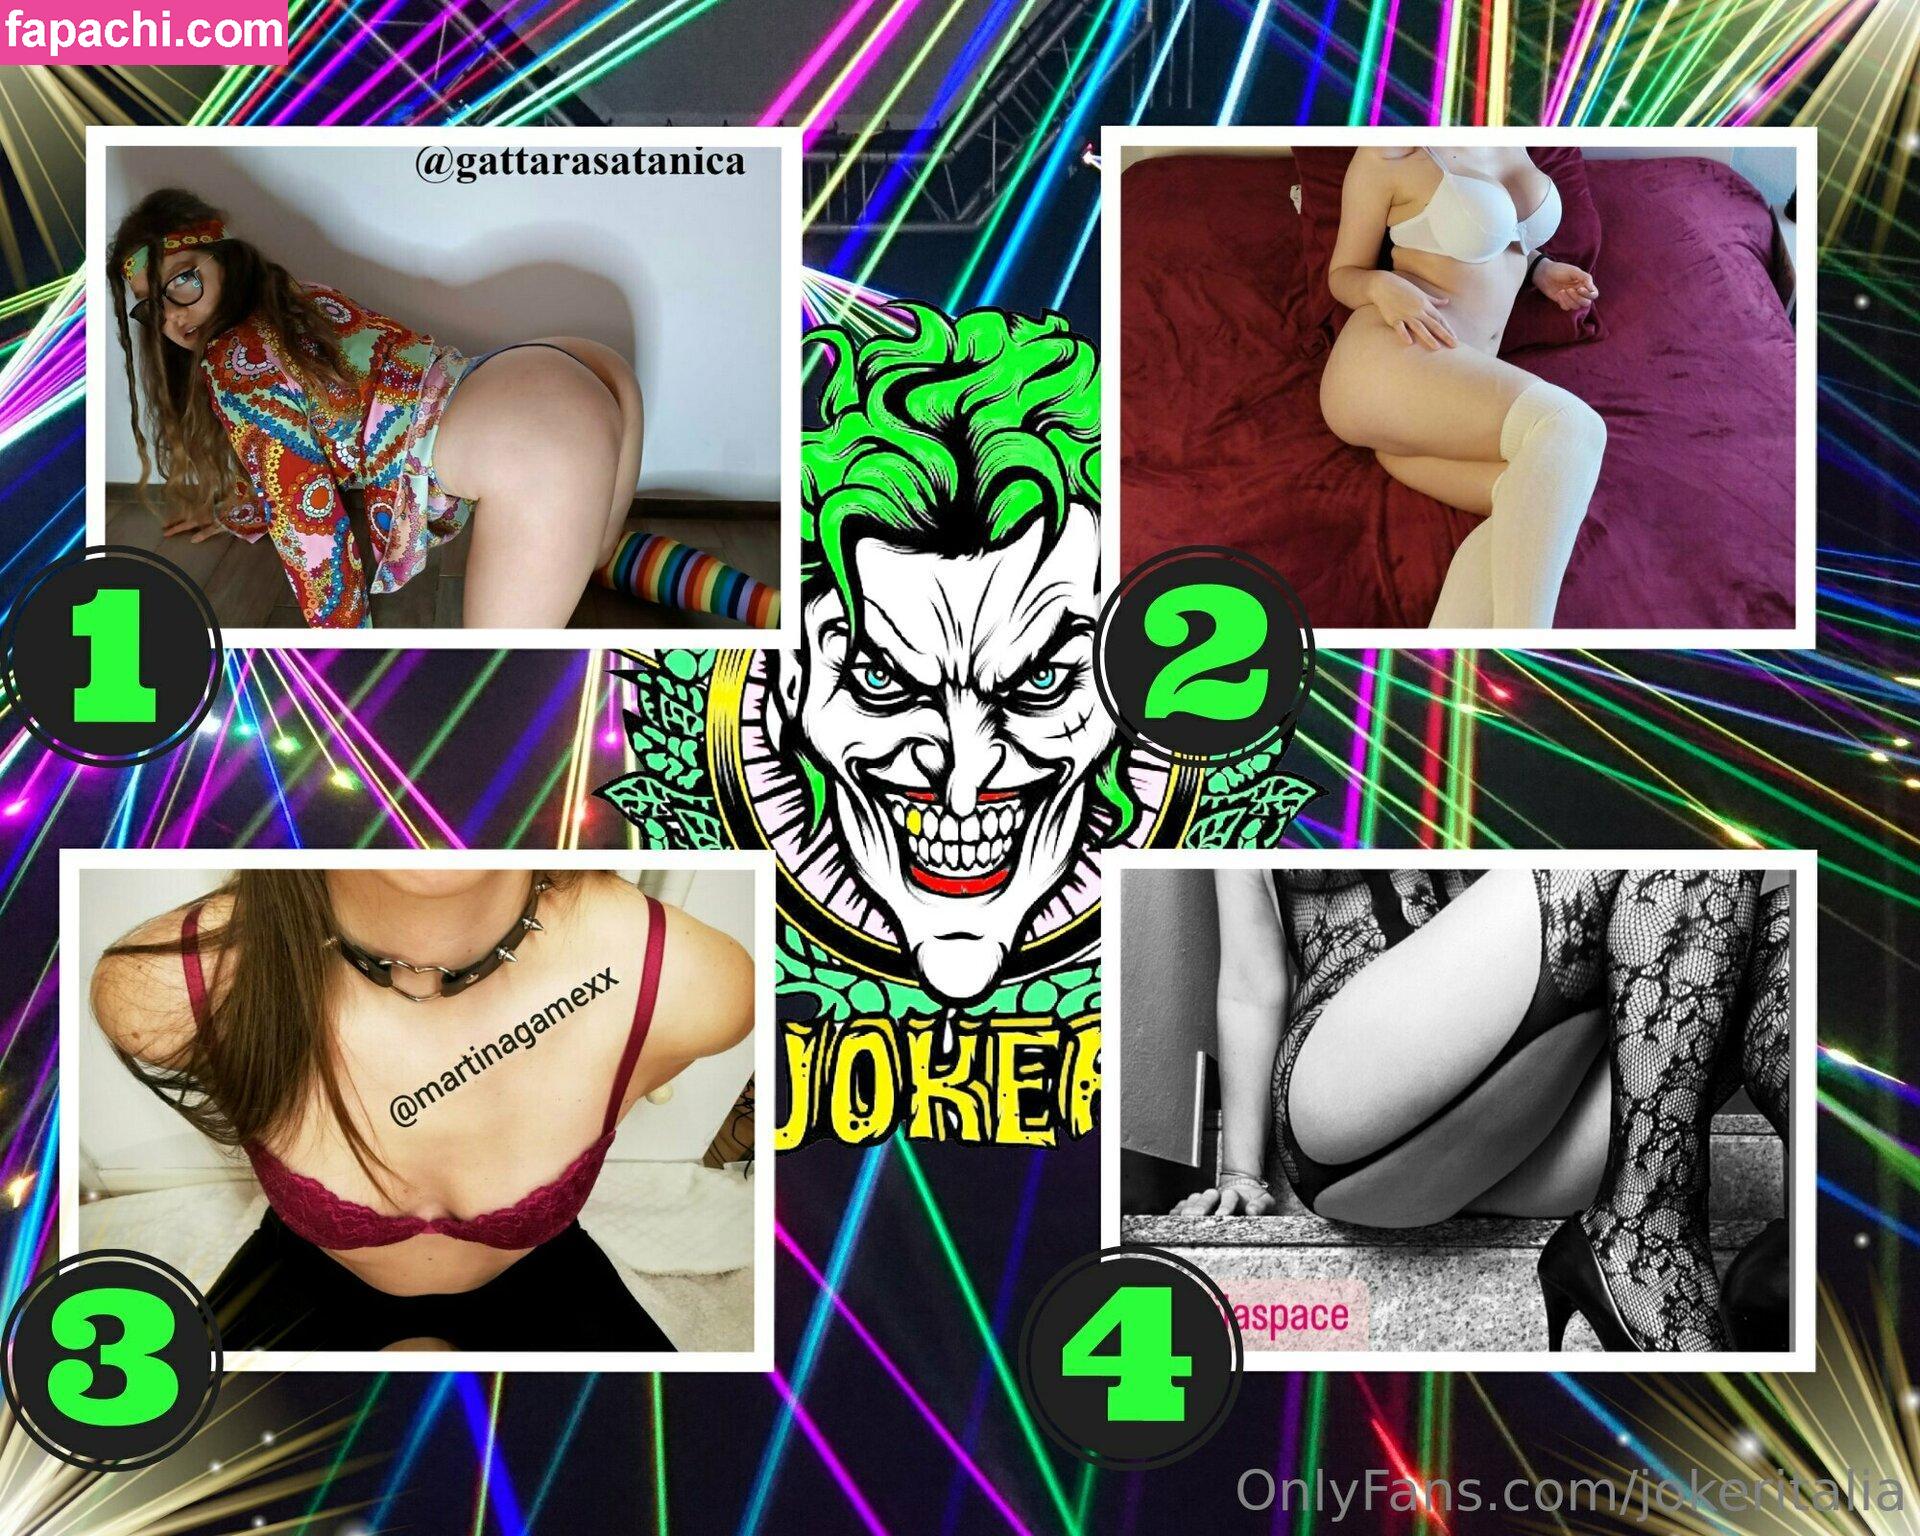 jokeritalia / jokeritalia_ofc leaked nude photo #0414 from OnlyFans/Patreon